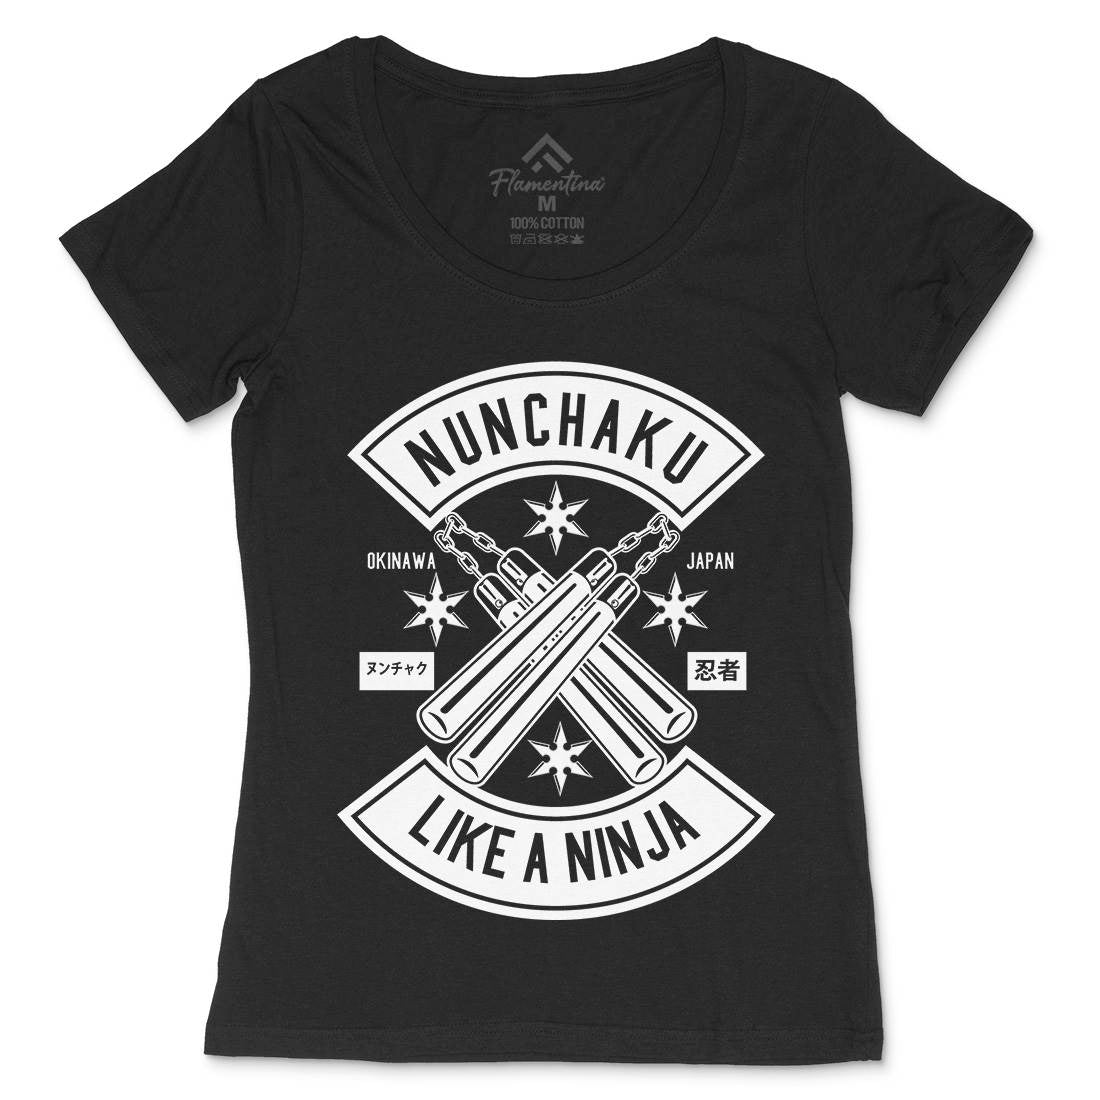 Nunchaku Womens Scoop Neck T-Shirt Sport B589